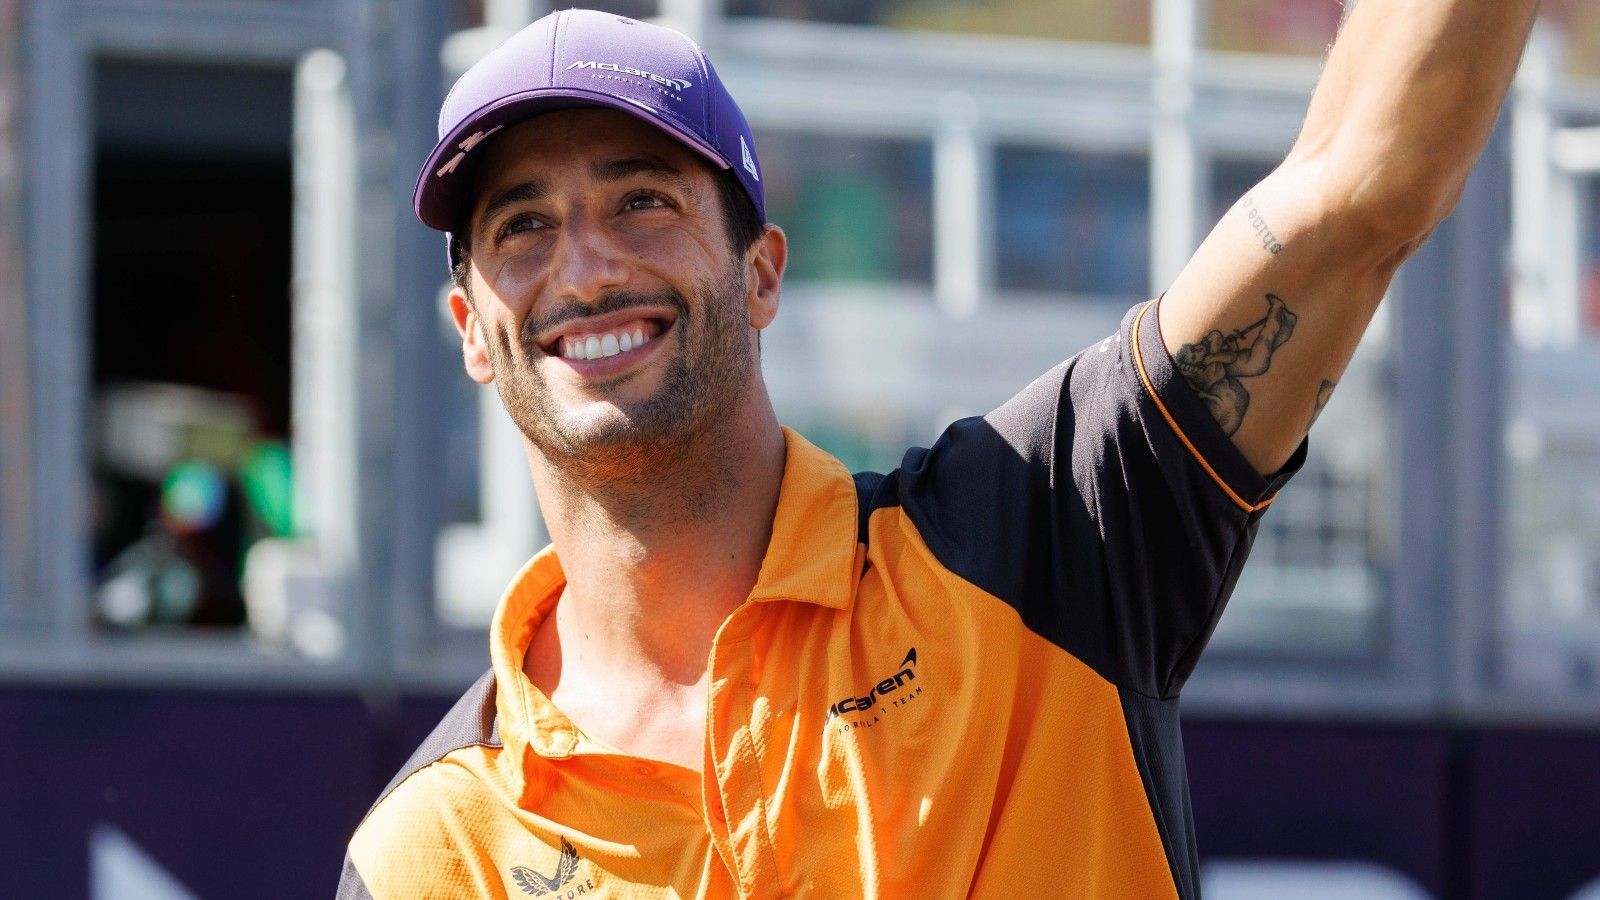 
                <strong>Daniel Ricciardo</strong><br>
                Der Australier Daniel Ricciardo sieht die Sache um einiges entspannter als die Kollegen. Er habe keine Probleme, ohne Schmuck im Auto zu sitzen, sagte er schon vor dem Australien-GP Anfang April. "Es war aber das erste Mal, dass ich von feuerfester Unterwäsche gehört habe", so Ricciardo weiter, der sich einen Scherz nicht verkneifen konnte: "Es muss aber auf jeden Fall maßgeschneidert sein!"
              